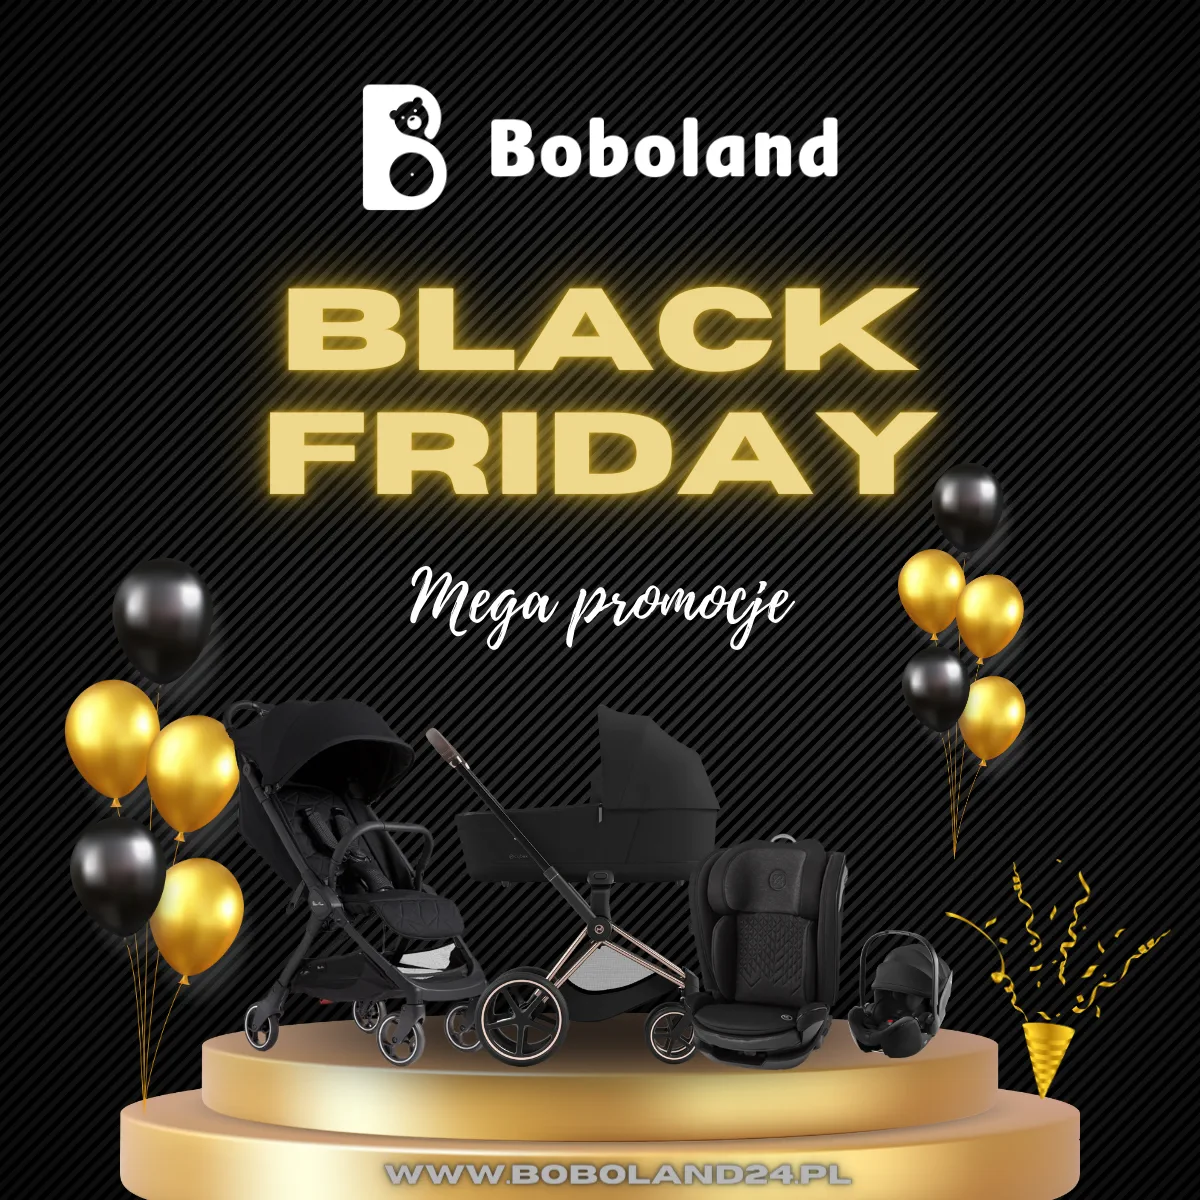 Black Friday Boboland